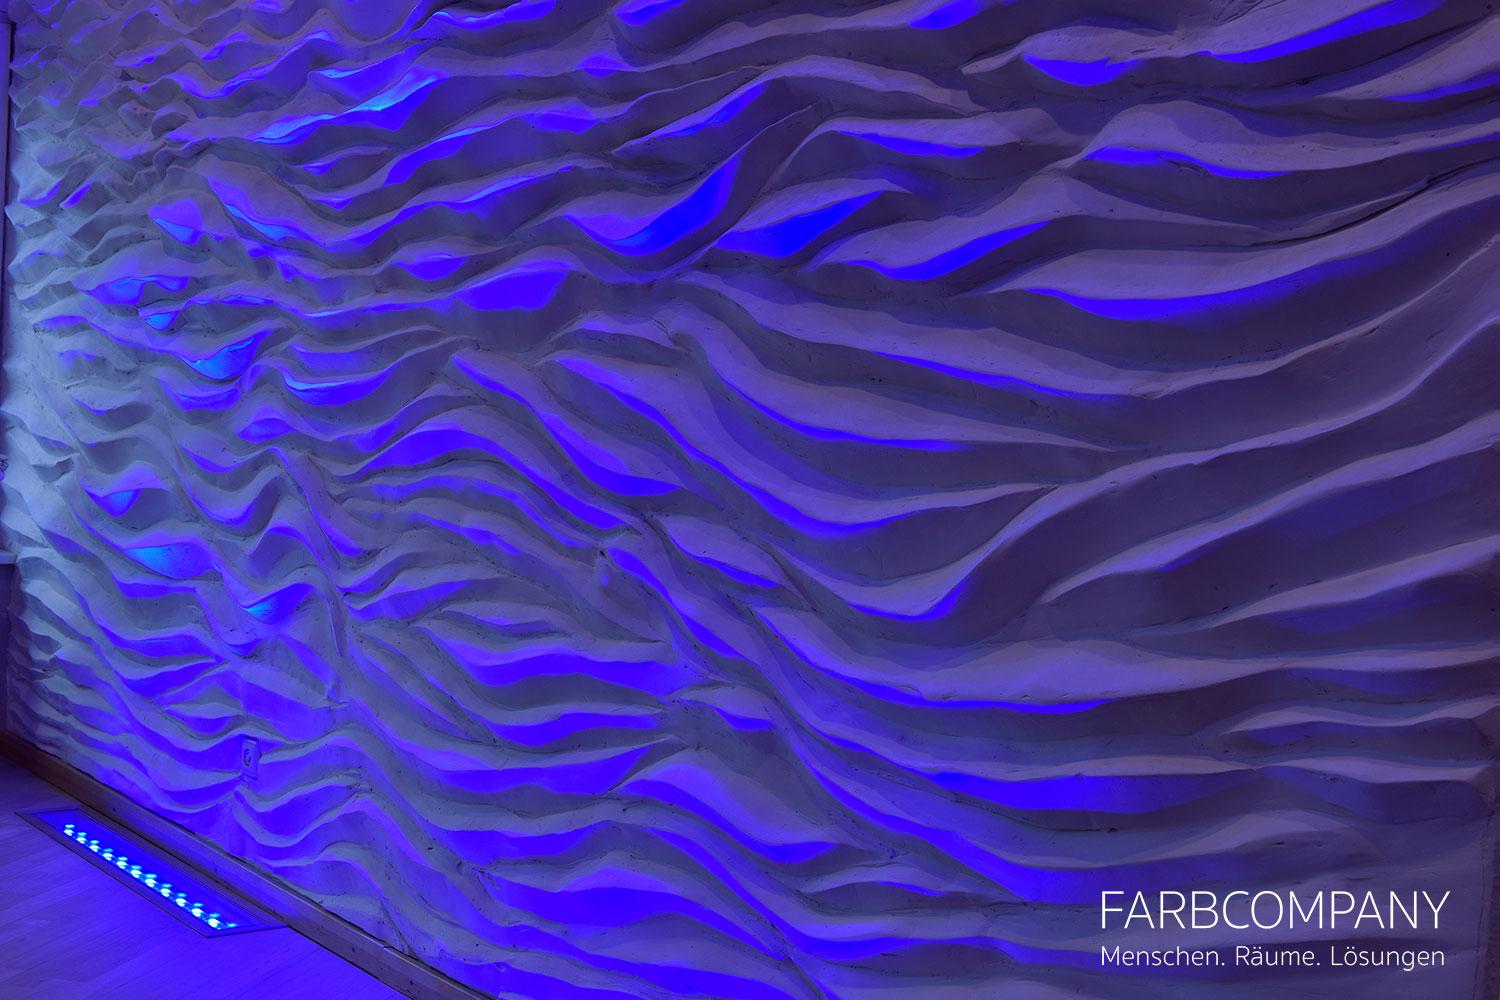 Wandgestaltung/ Design einer exklusiven Reliefwand mit LED Beleuchtung #wandgestaltung #wandrelief #raumgestaltung ©Mike Schleupner